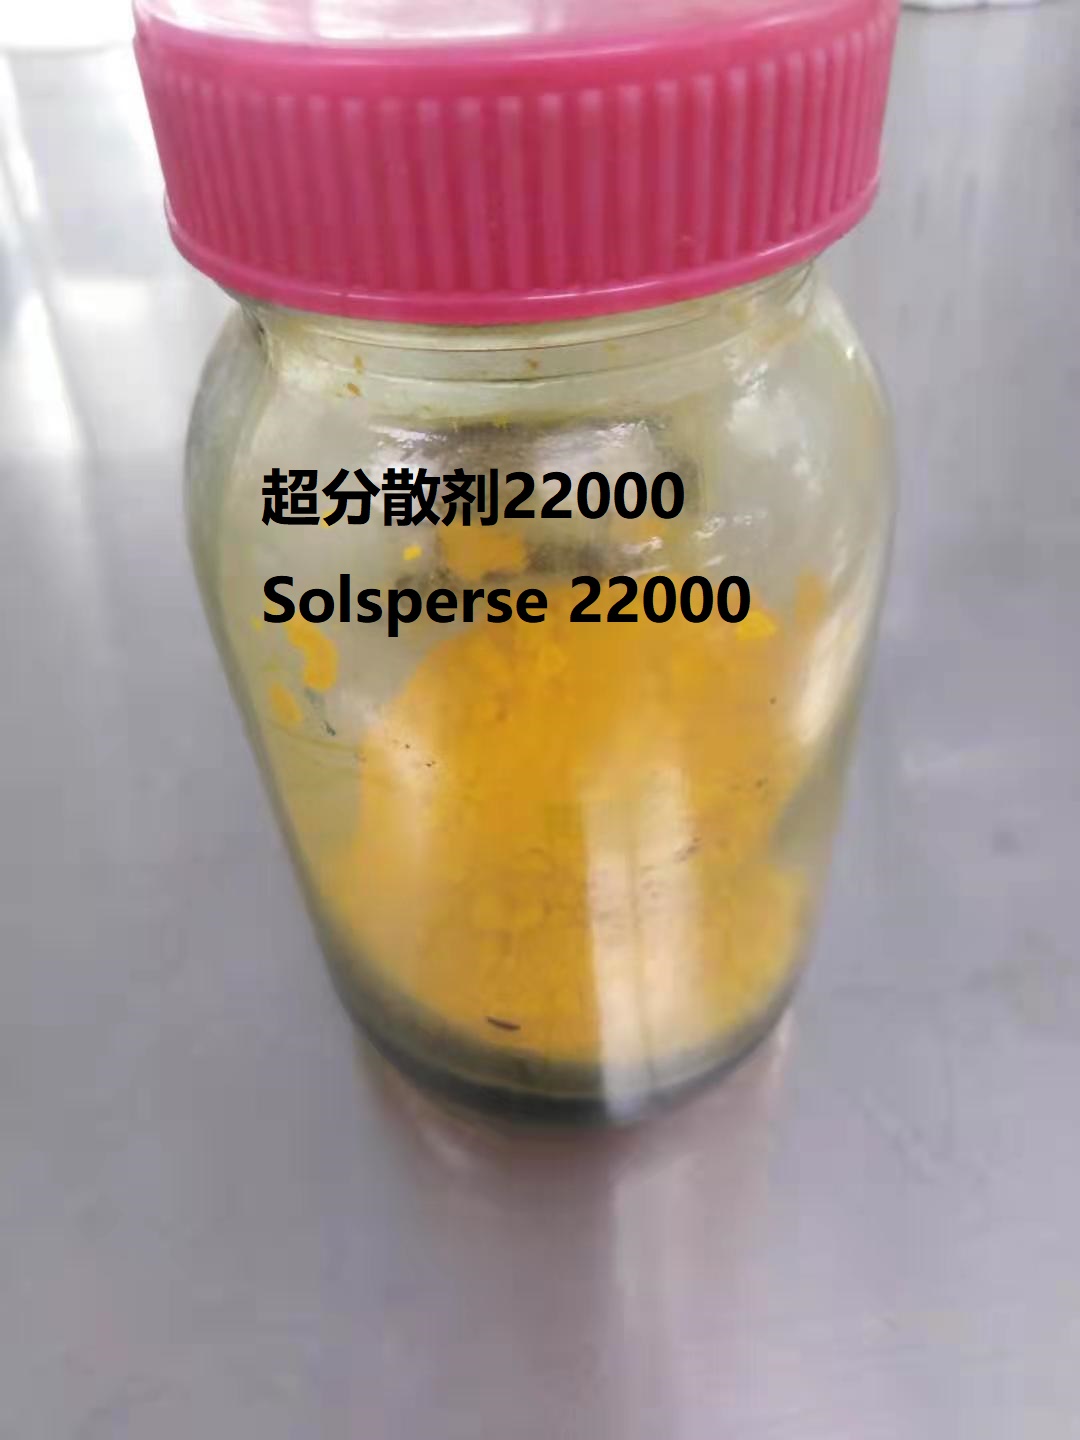 超分散剂22000,solsperse 22000